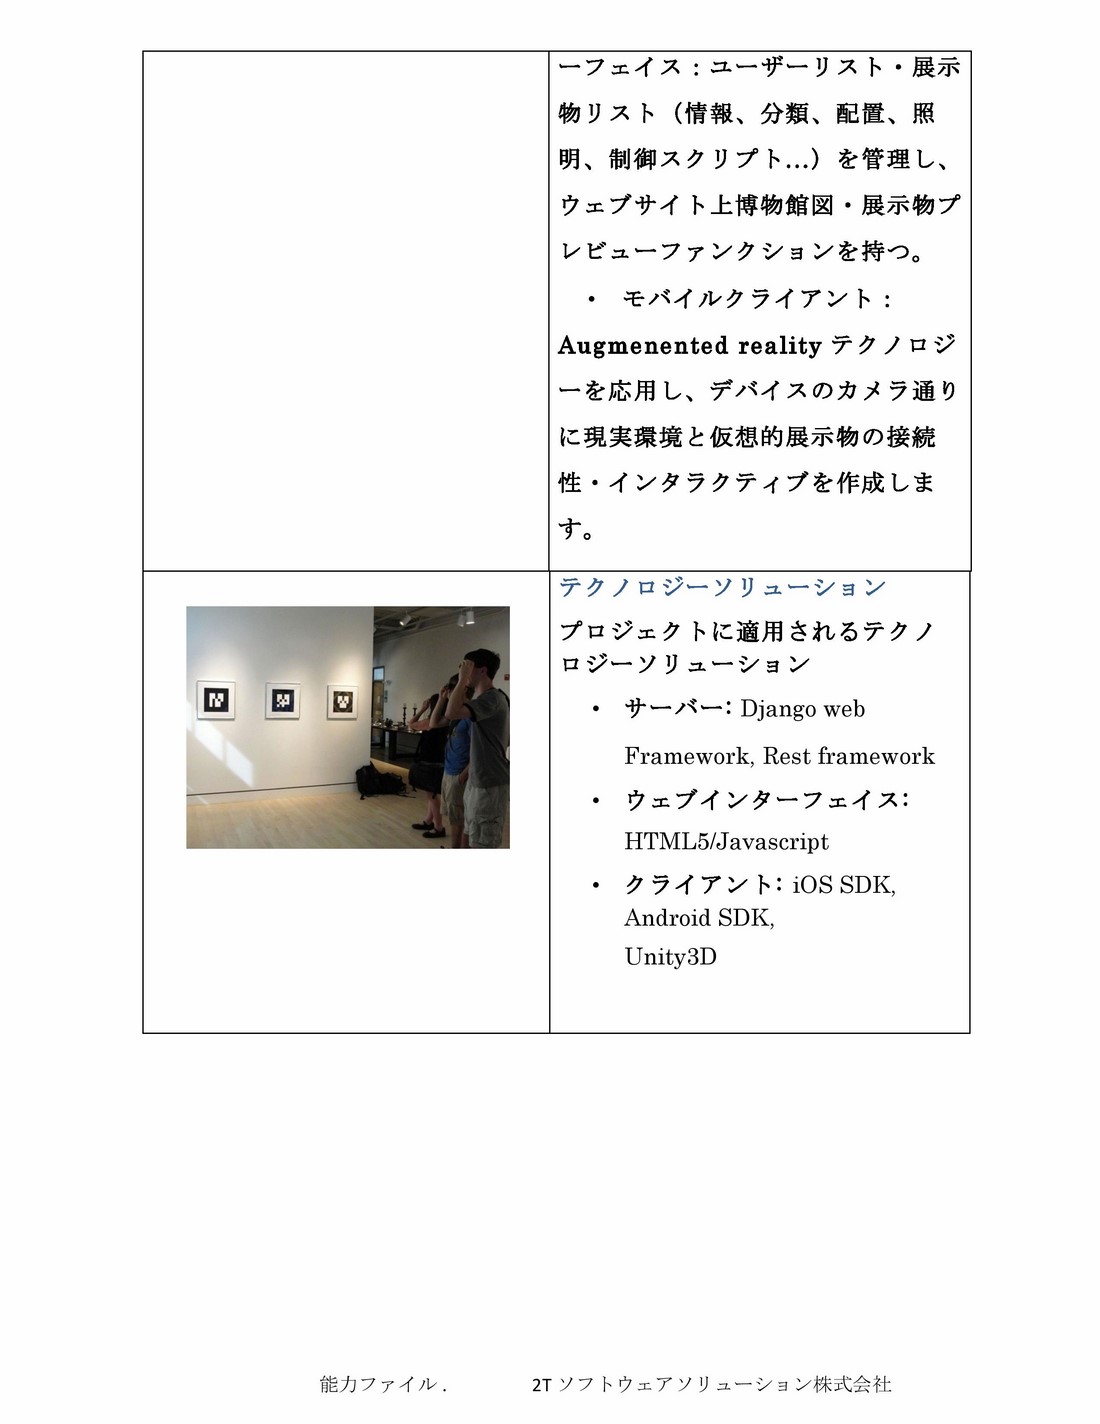 2TS Profile_jap_2015-10-21-page-021 (Copy)